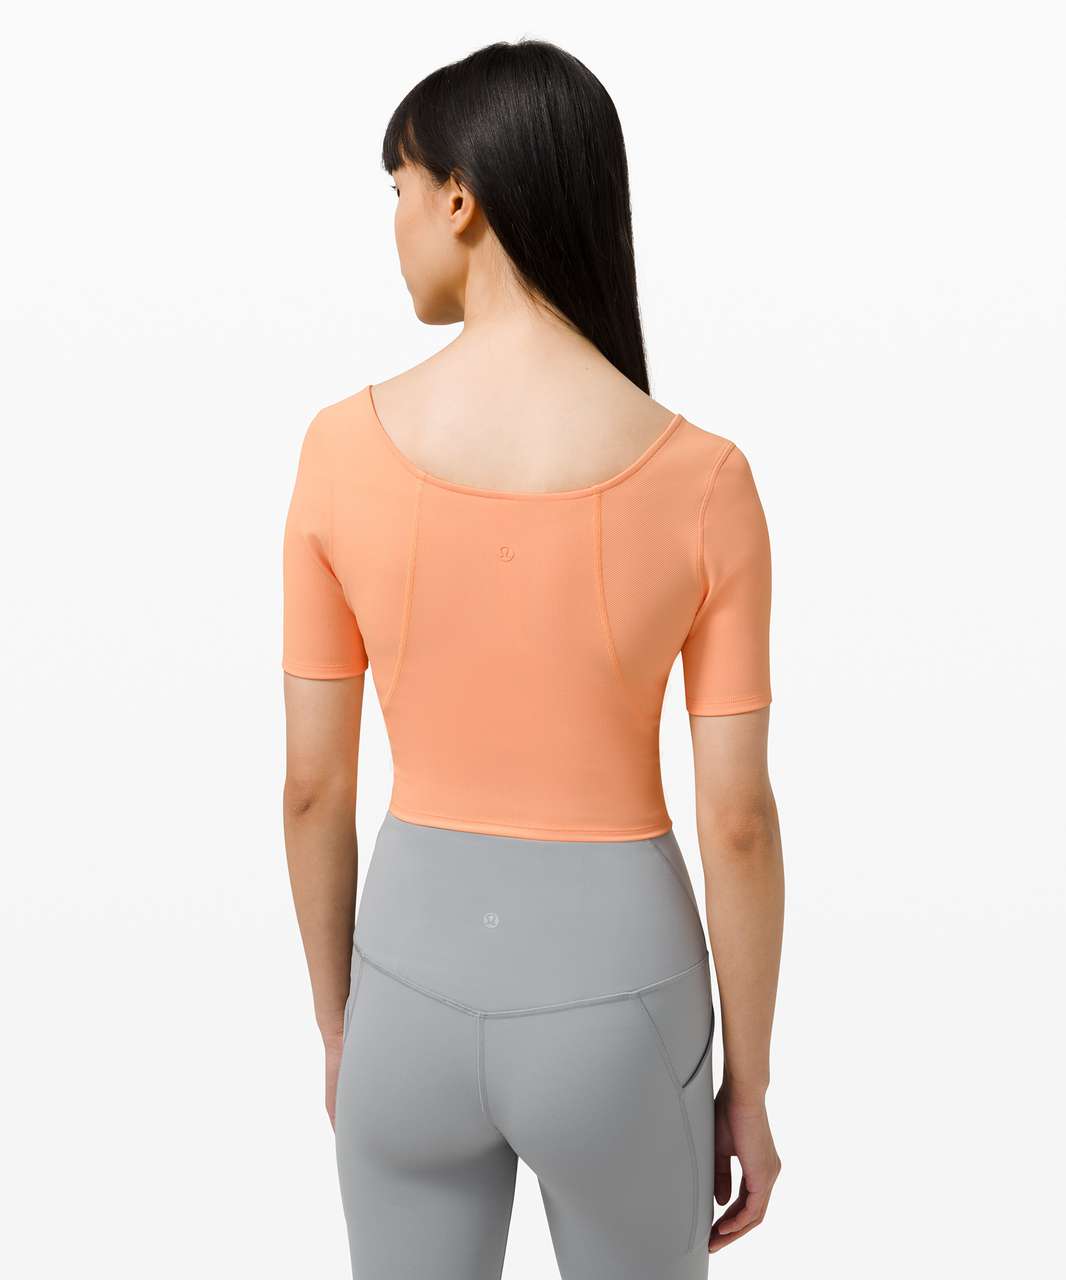 Lululemon Ribbed Contoured V-Neck Yoga Short Sleeve - Malibu Peach